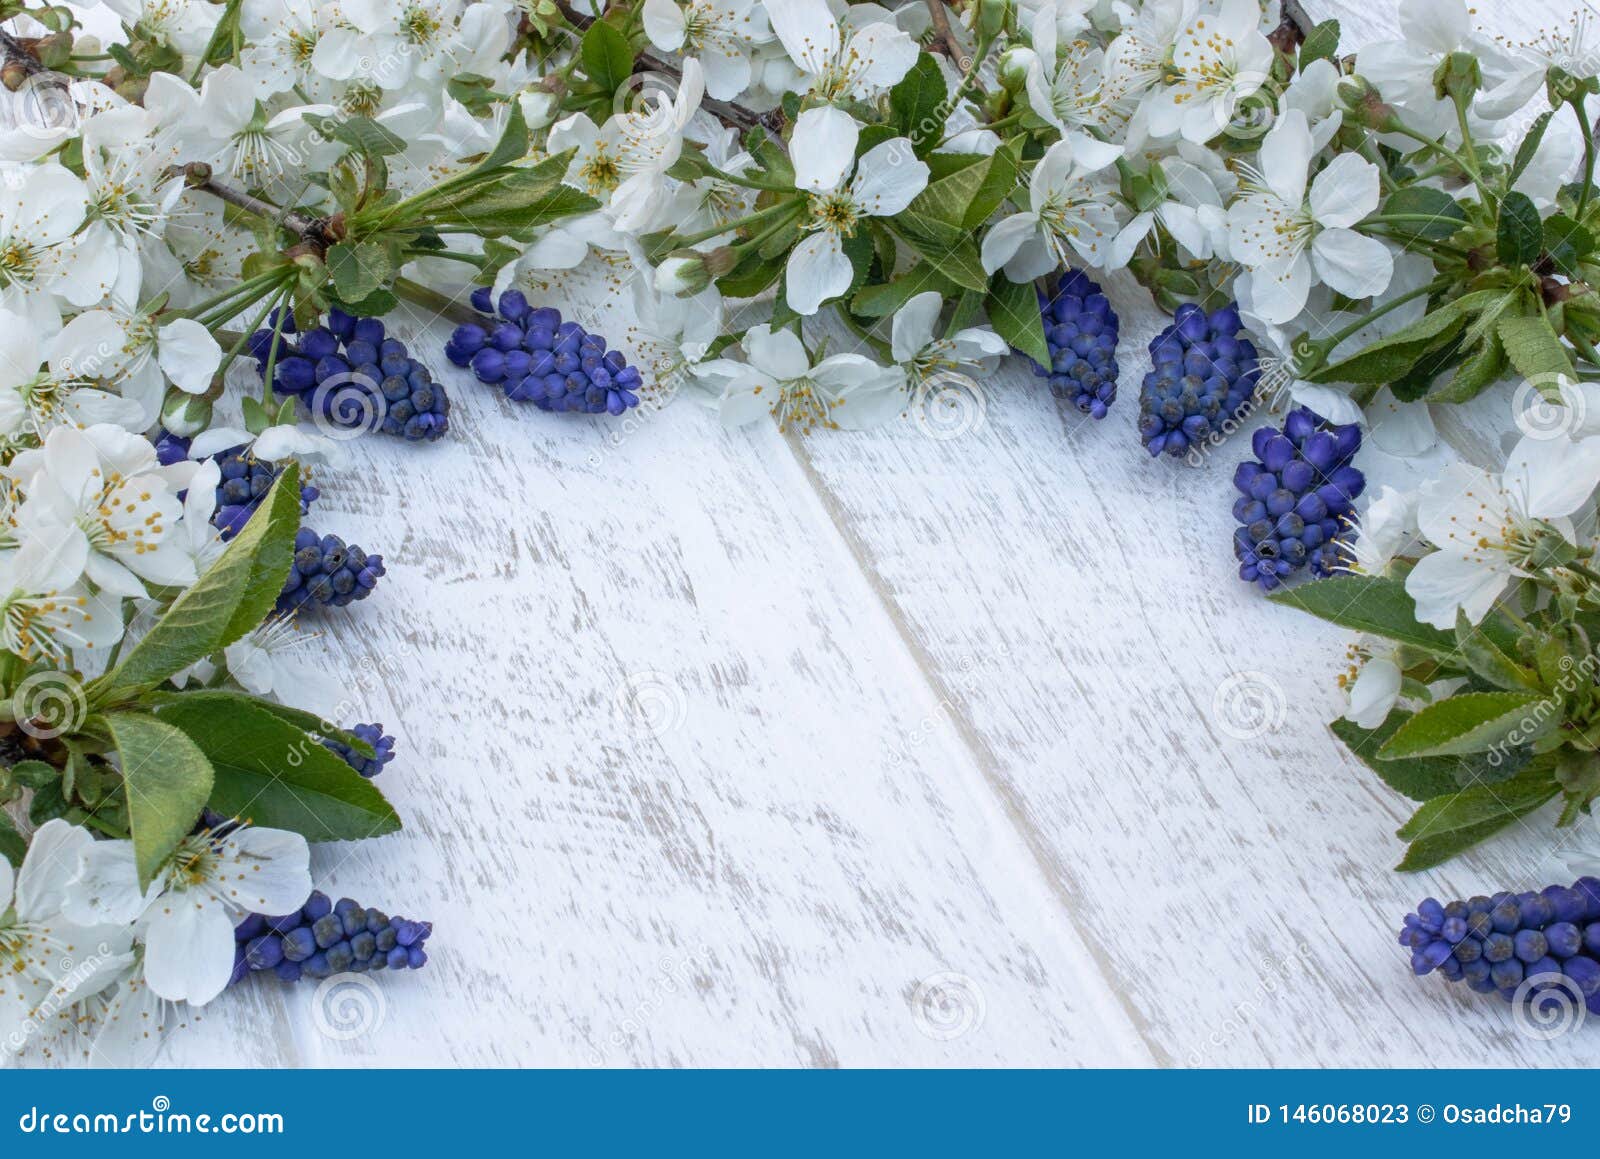 Μια ανθοδέσμη των μπλε κουδουνιών στους λευκούς, ξύλινους πίνακες, με τα άσπρα λουλούδια του κερασιού, των κουδουνιών E r